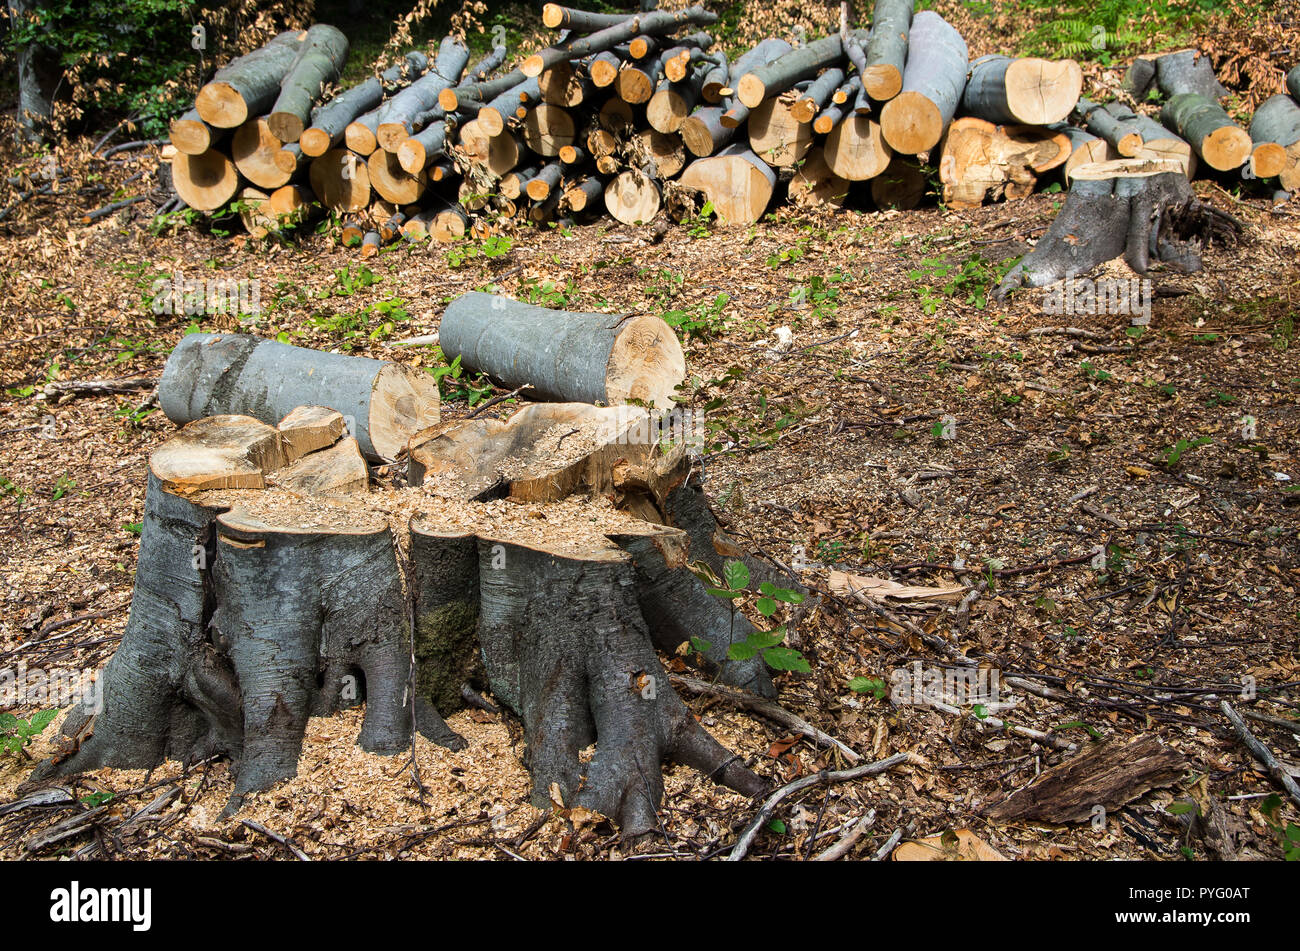 Los daños a la naturaleza. La deforestación, la destrucción de bosques caducifolios. Europa Foto de stock